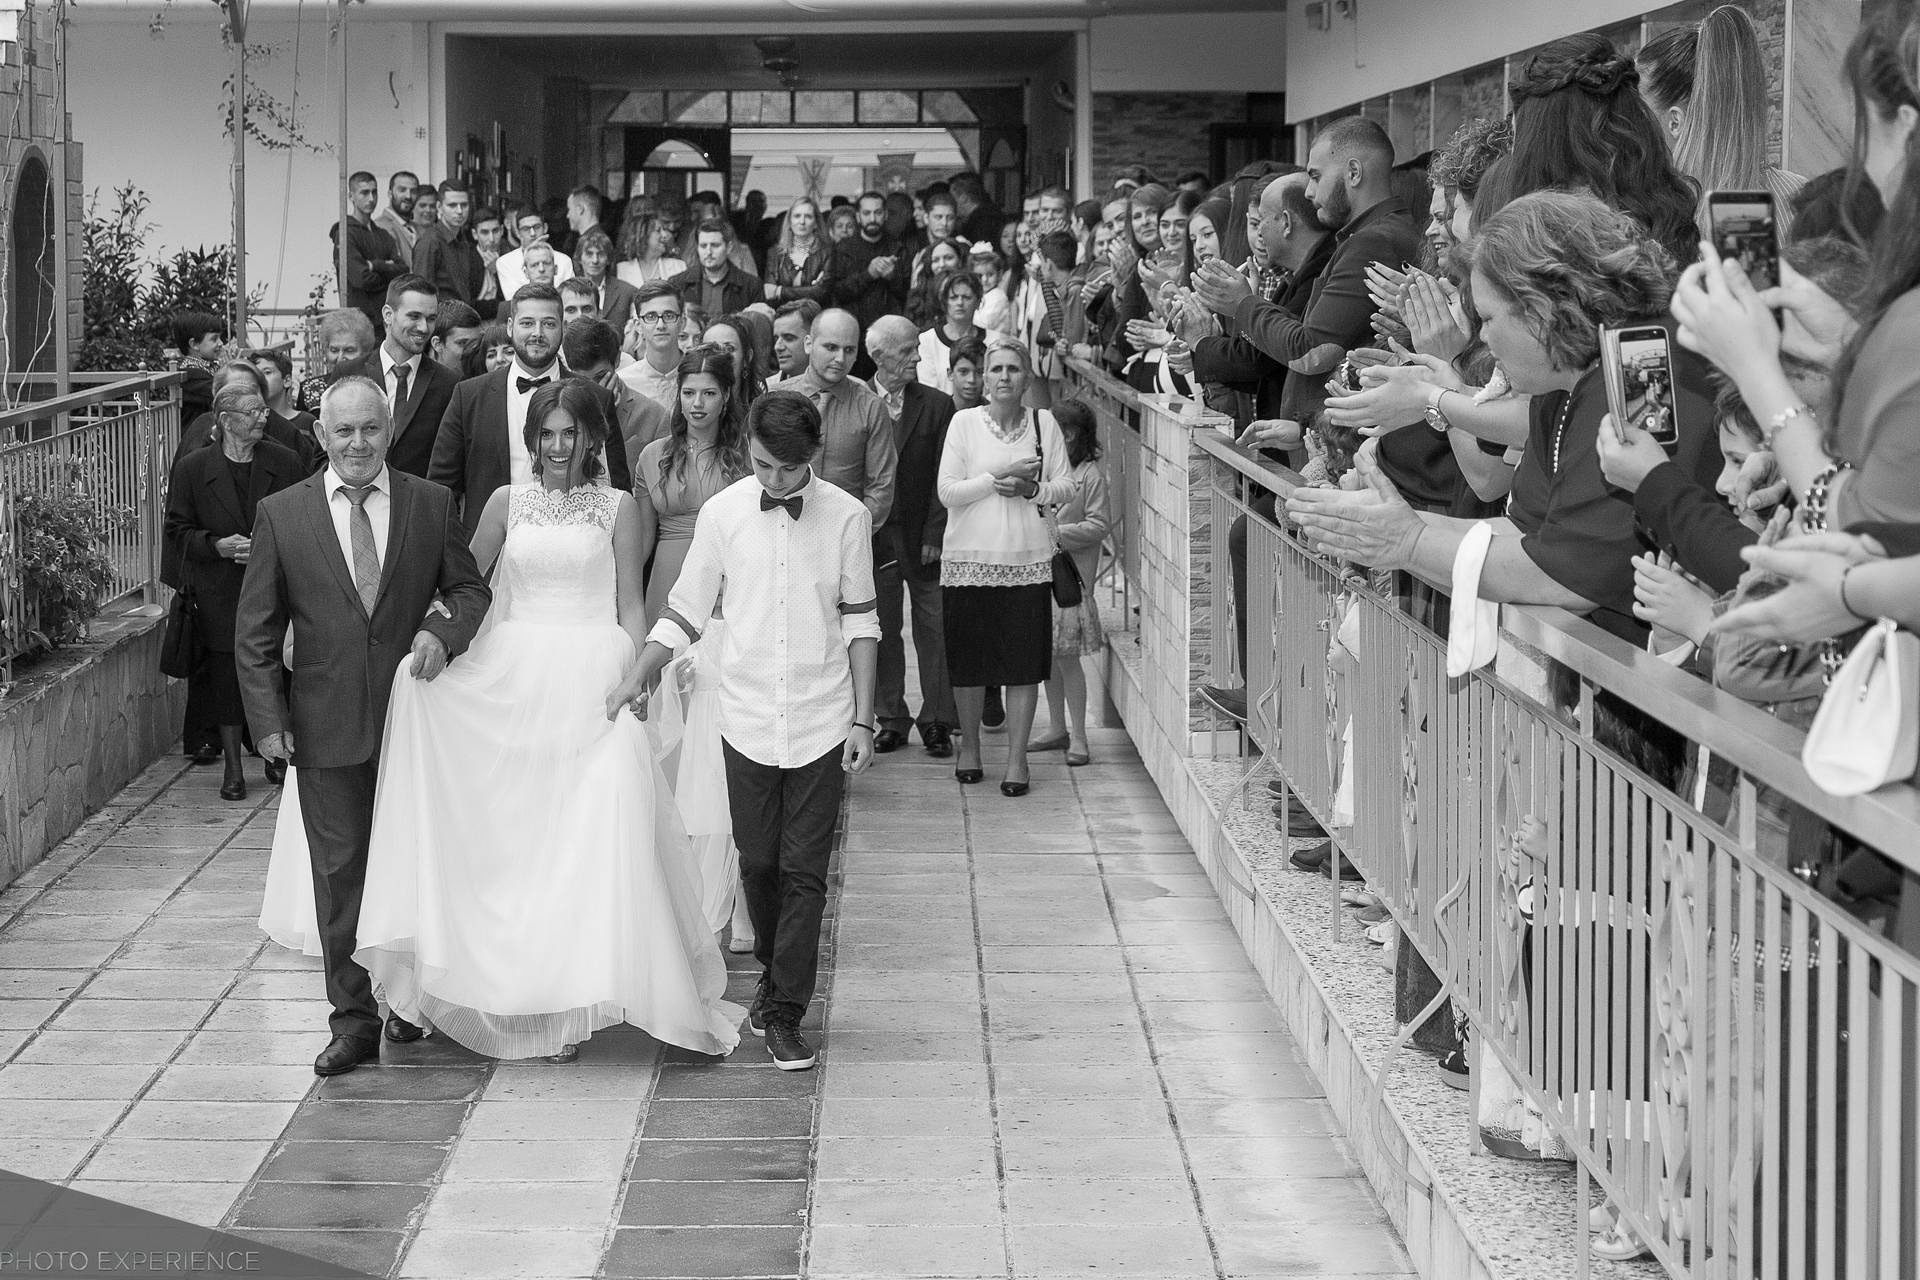 γαμος φωτογραφιση φωτογραφηση φωτογραφια θεσσαλονικη χαλκιδικη οικονομικοι καλοι φωτογραφοι γαμου φωτογραφος επομενη μερα next day βαπτιση βαπτισης photography wedding baptism christening photographer thessaloniki photo experience φωτογραφειο φωτογραφεια βίντεο βιντεοσκόπηση video videographer cinematographer cinematography στελιος πεσκετζης stelios pesketzis triandria τριανδρια